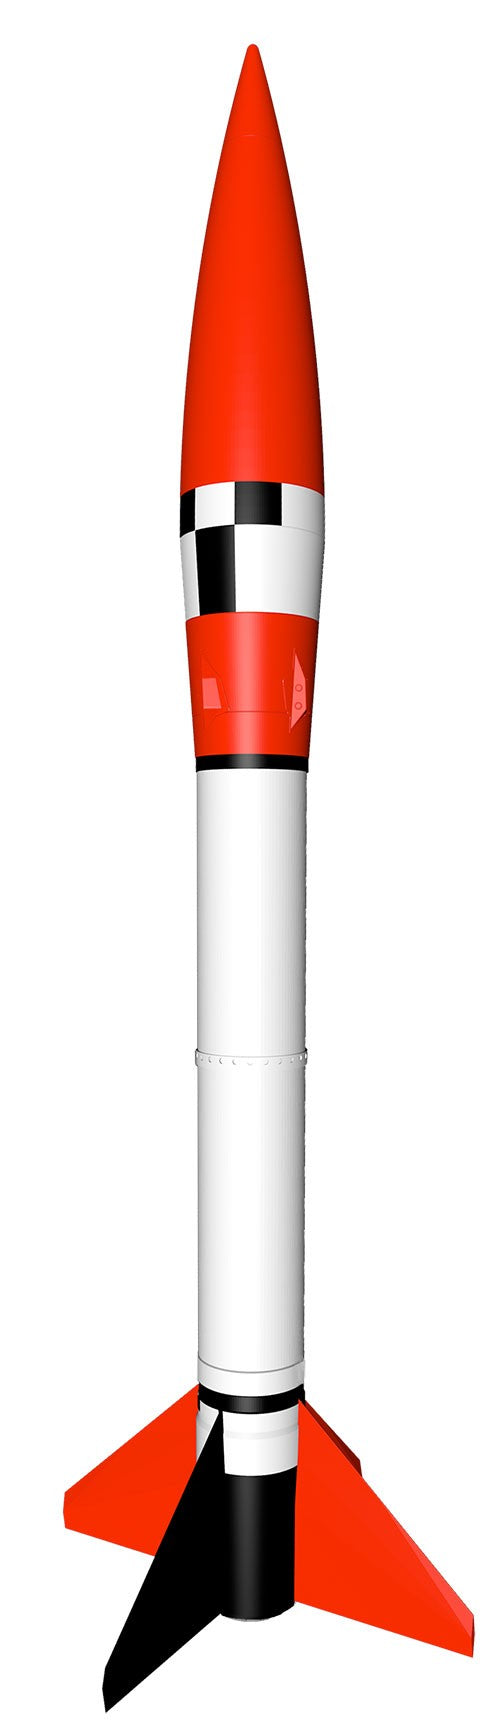 Honest John Model Rocket Kit, Skill Level 3 - Race Dawg RC